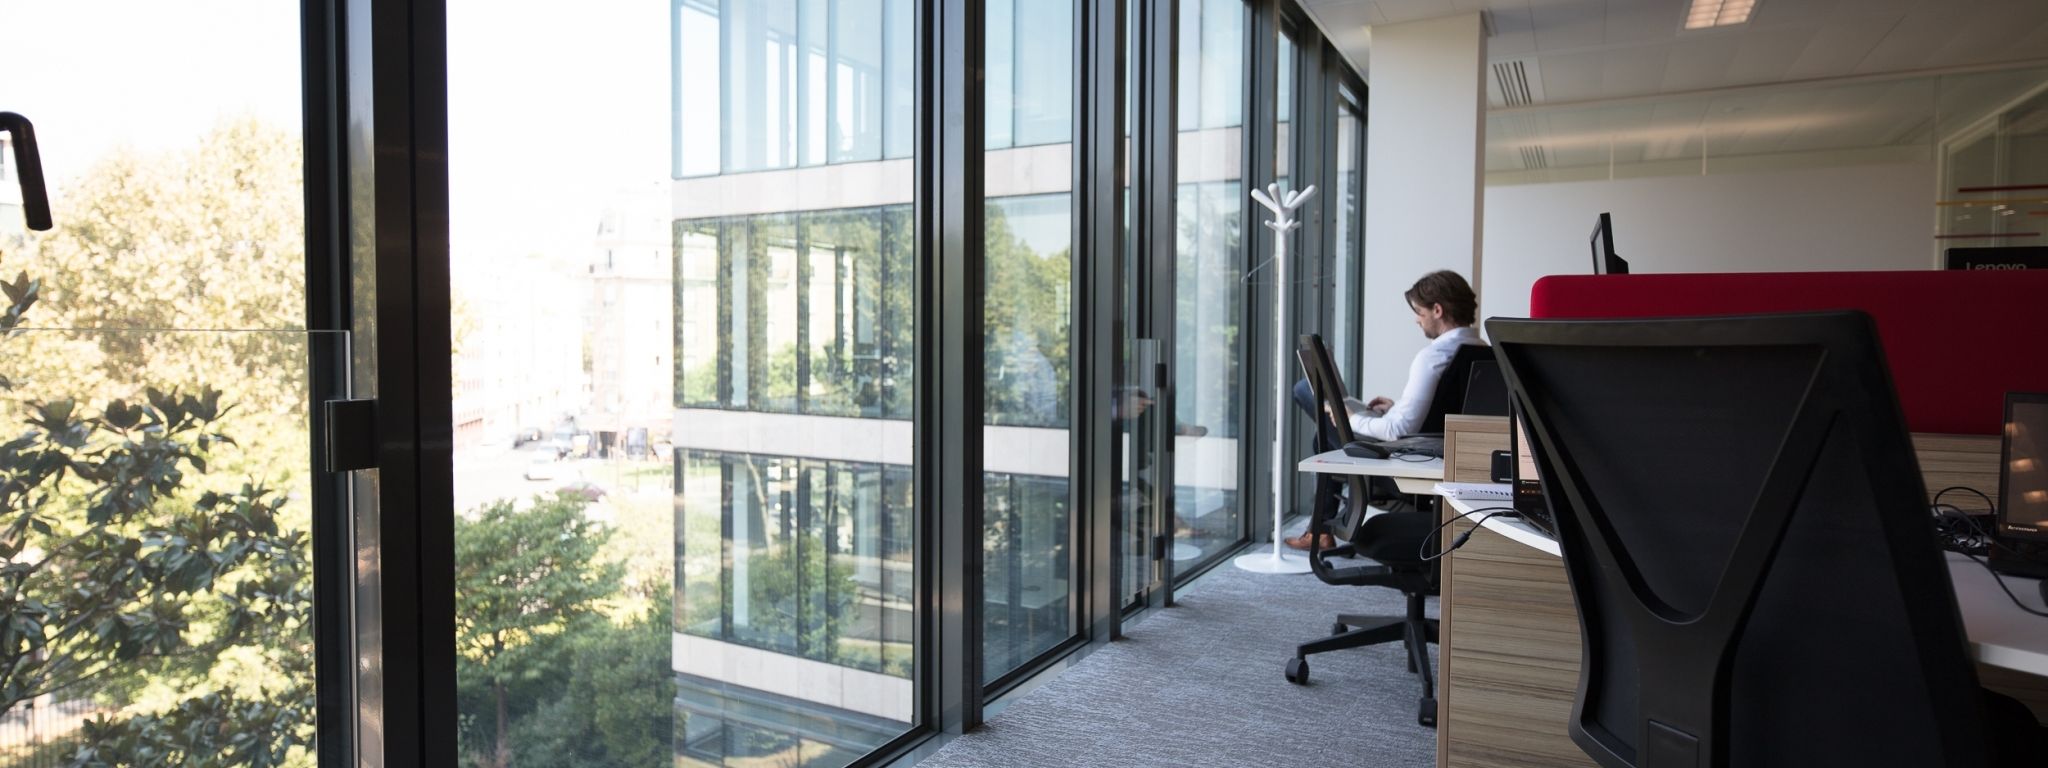 Umbau von Büroräumen zum Flex-Office: Was ist beim Flex-Office-Konzept zu beachten?